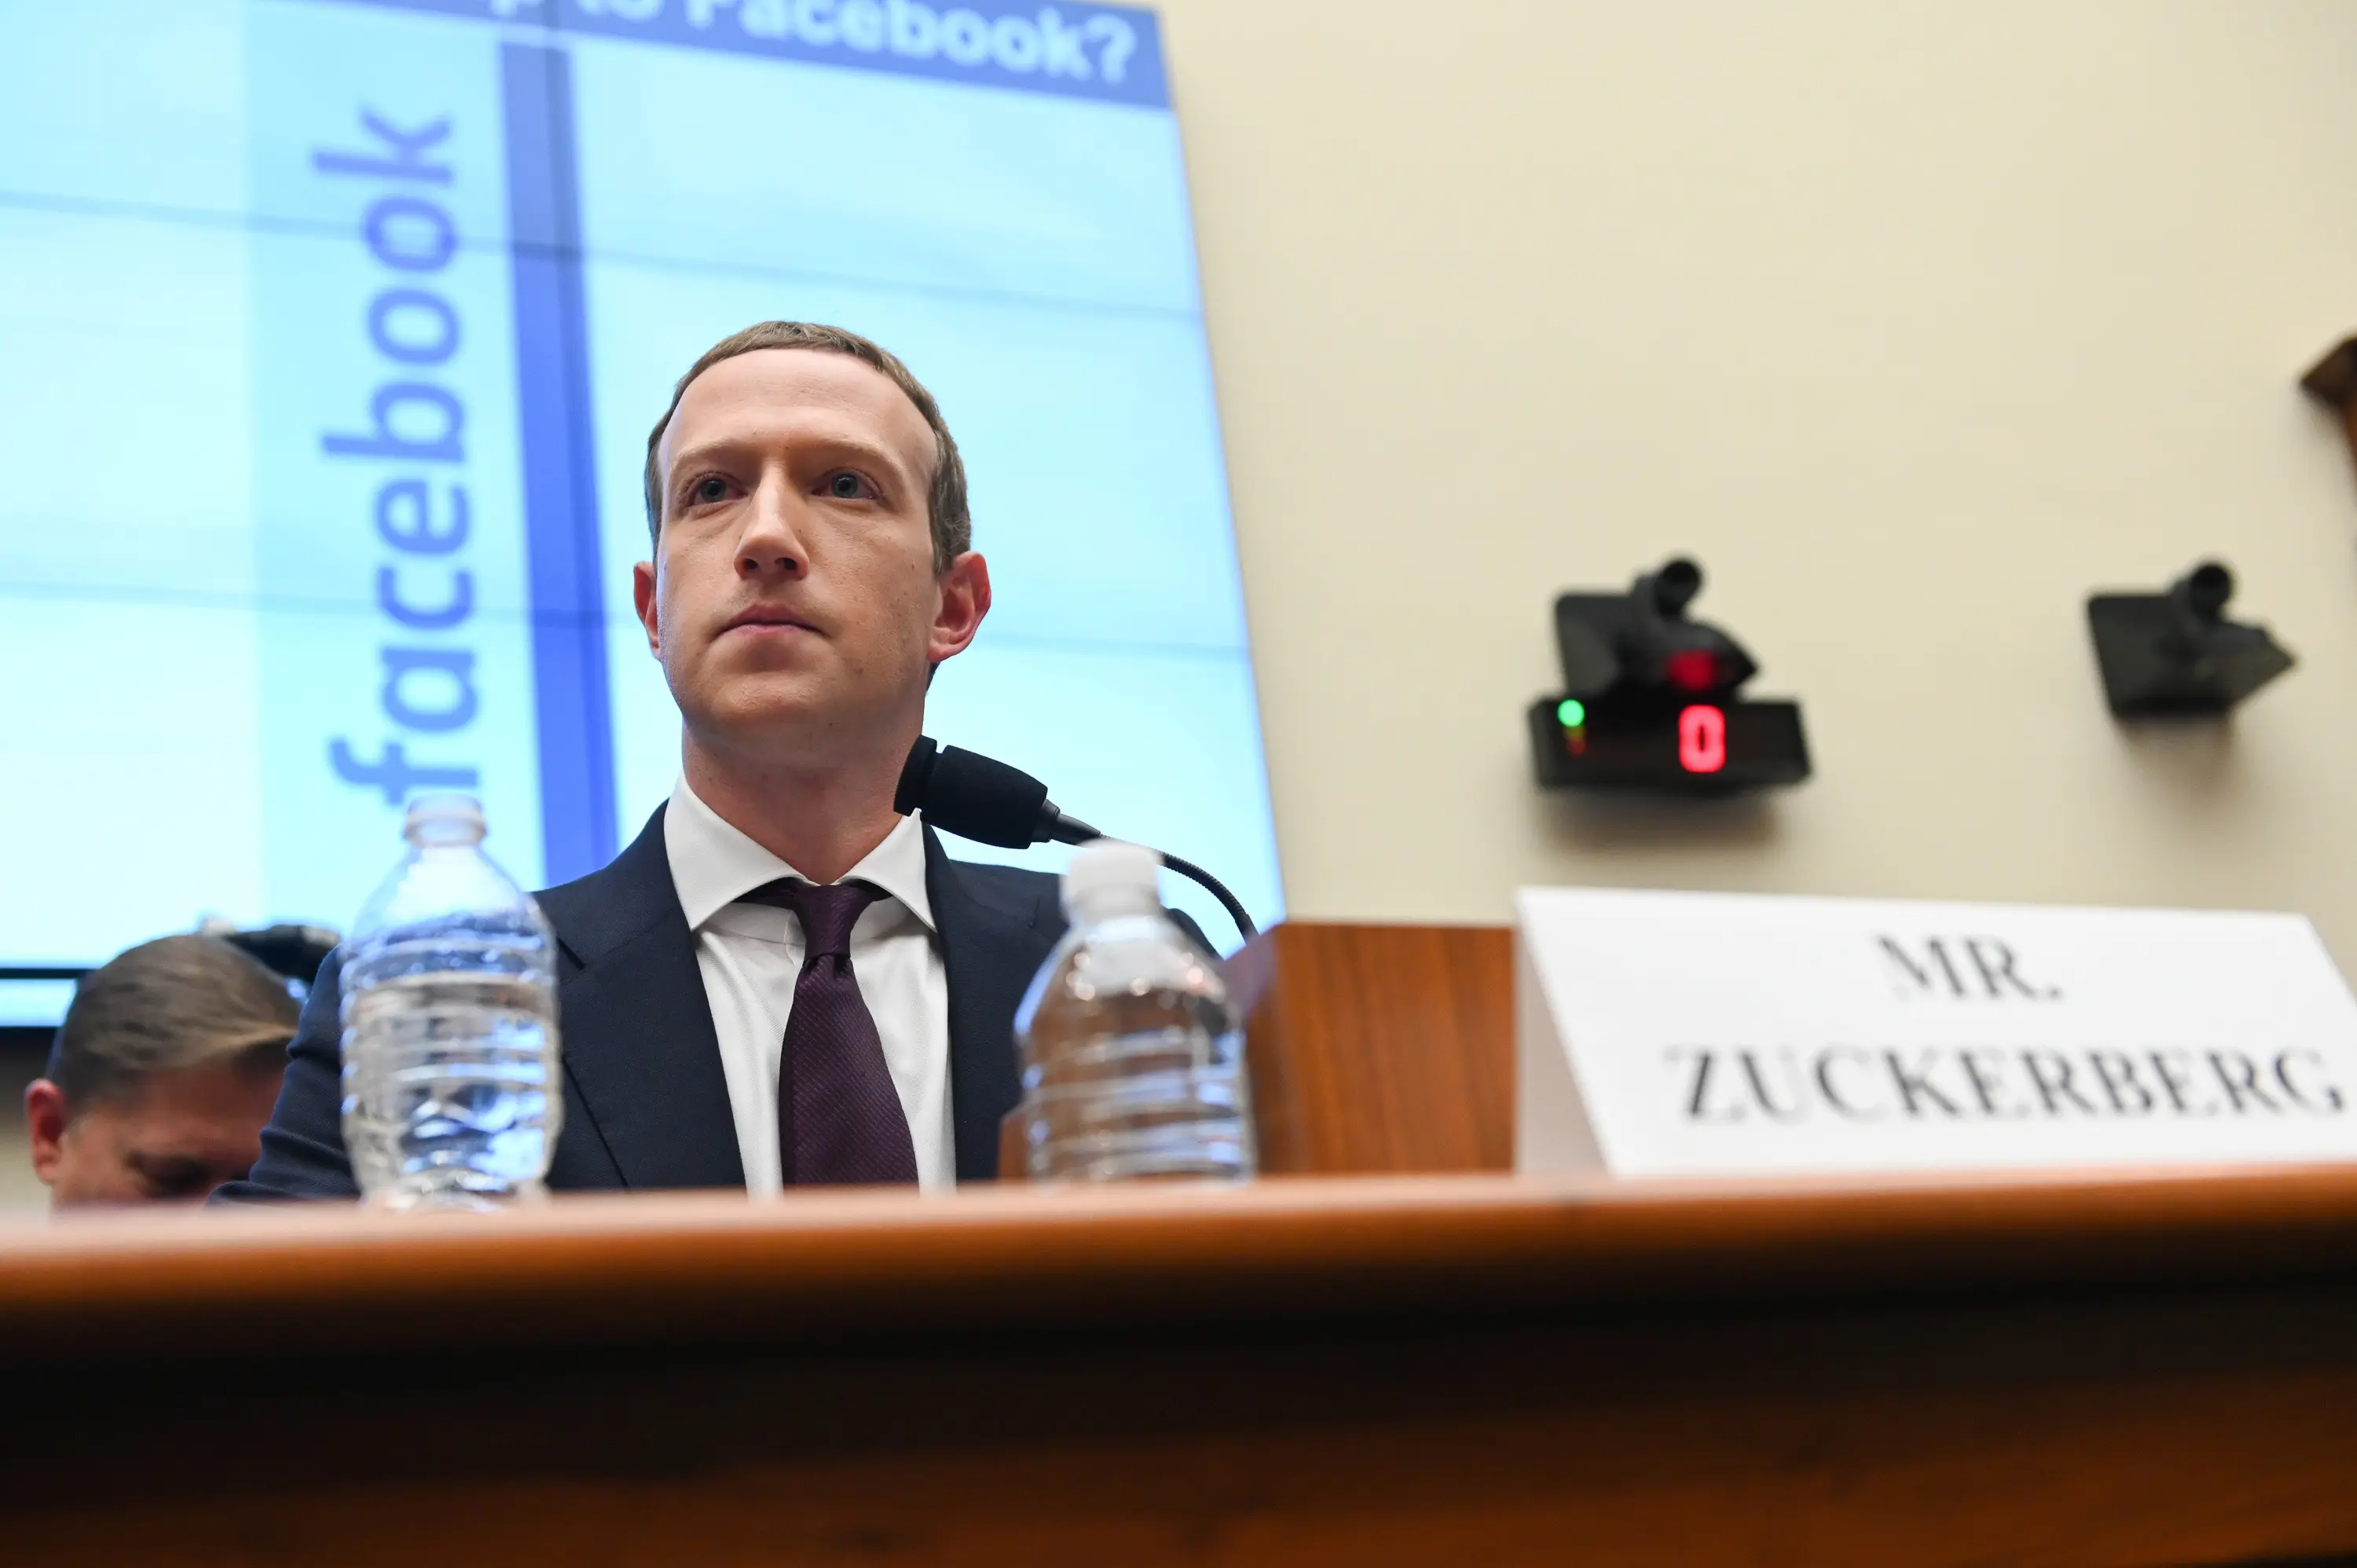 מקומו בסכנה? יושב הראש ומנכ"ל החברה והרשת החברתית פייסבוק, מארק צוקרברג, מעיד בפני ועדה בקונגרס האמריקני באוקטובר 2019